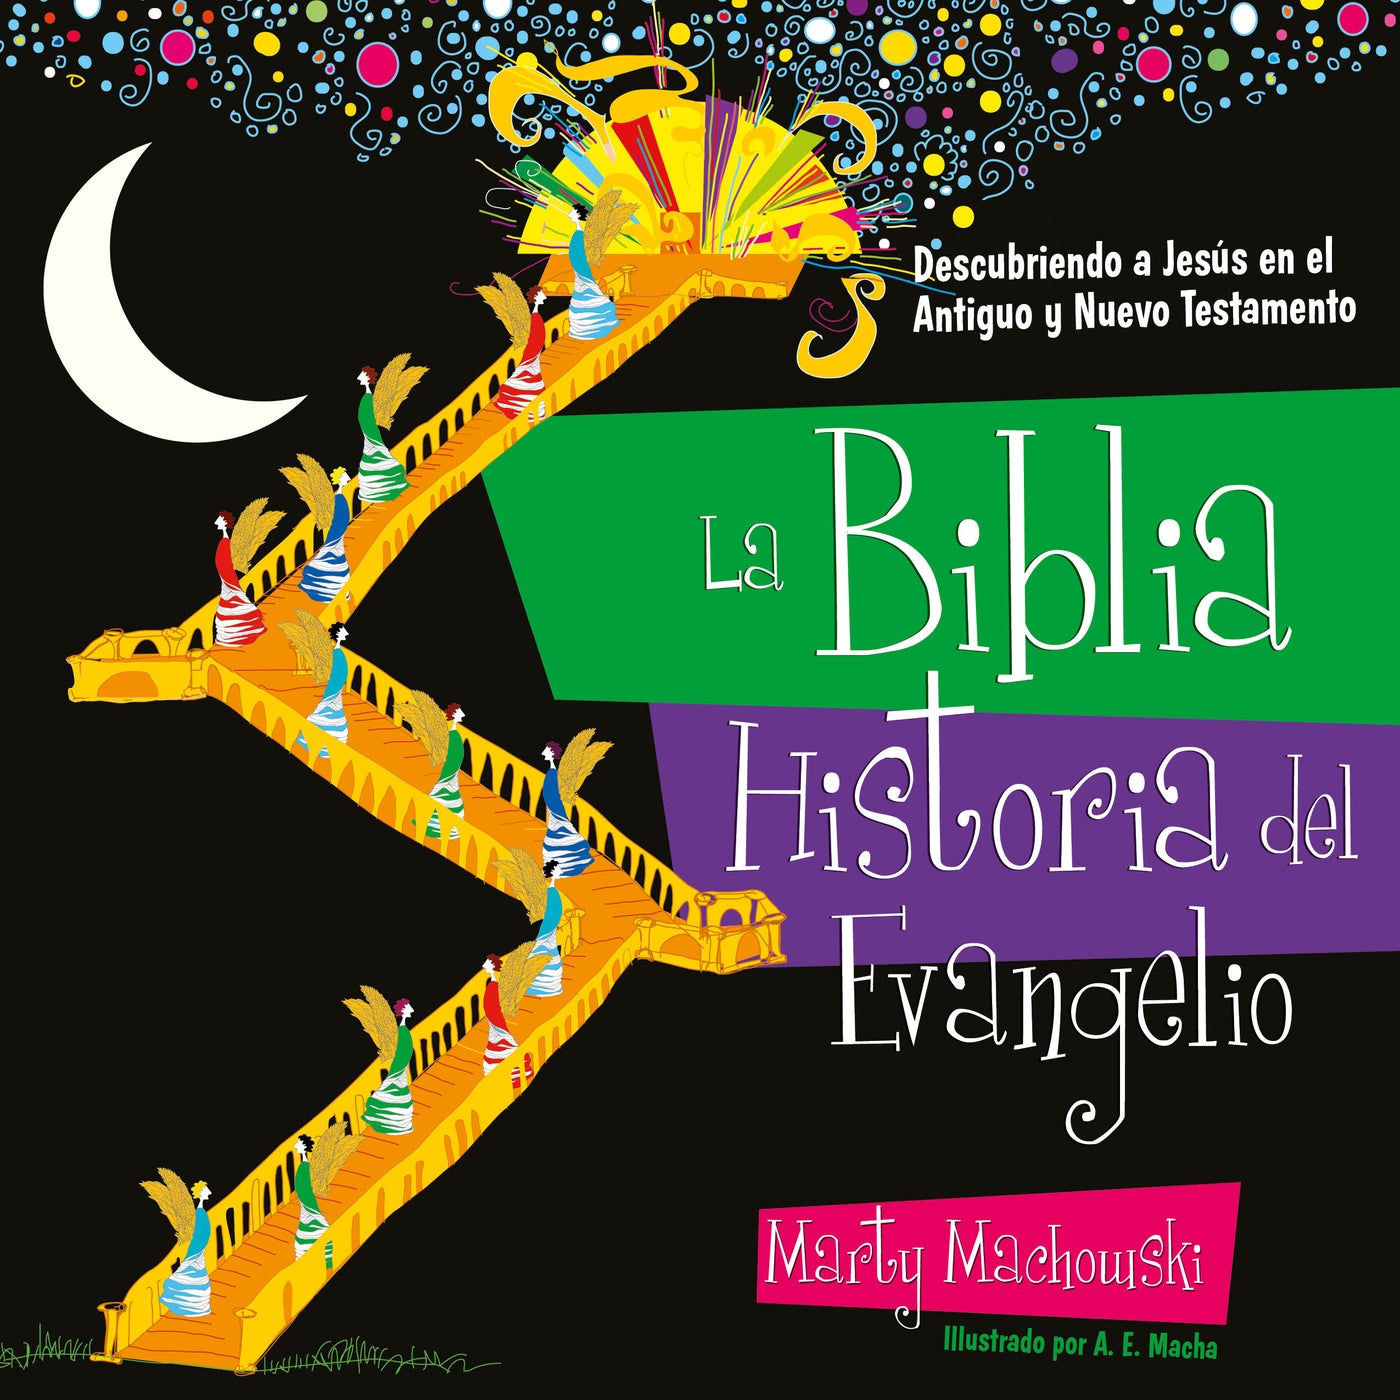 La Biblia historia del evangelio - Librería Libros Cristianos - Libro